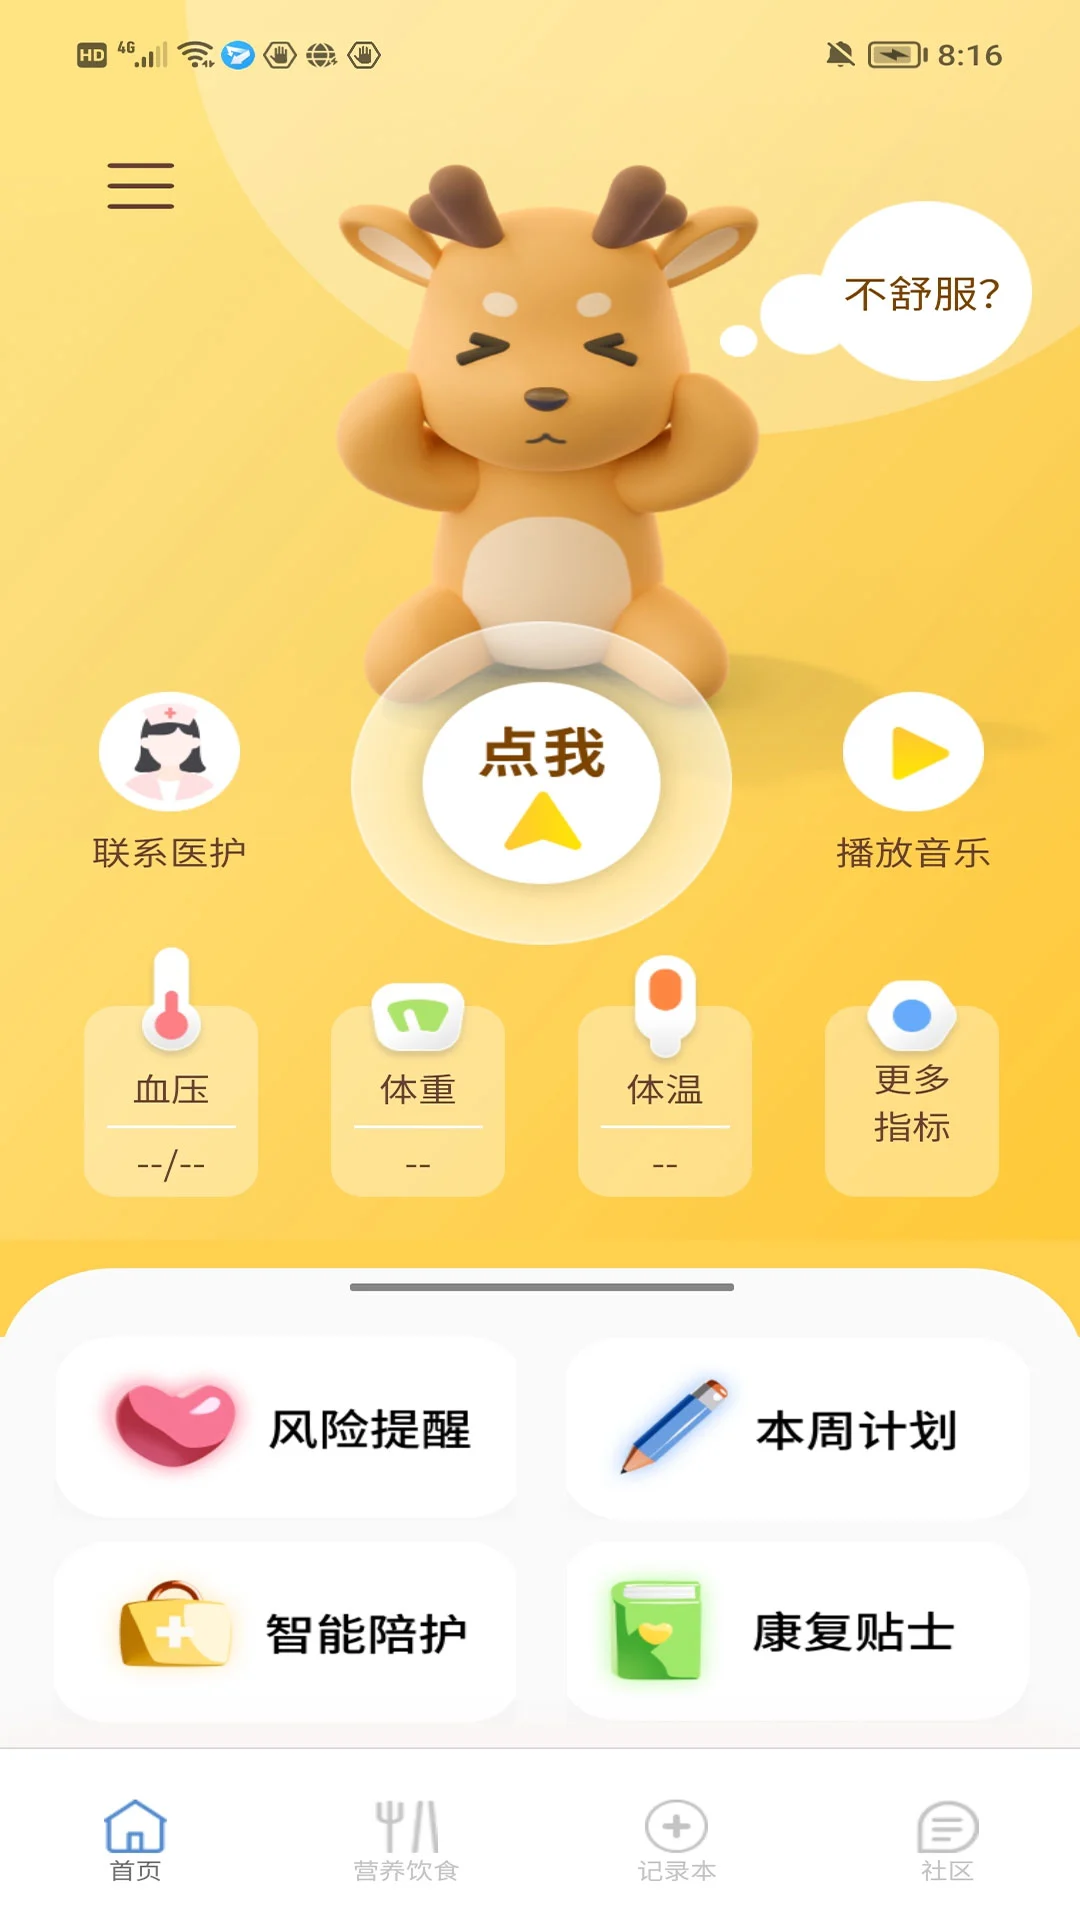 医鹿相伴注册登陆_医鹿相伴手机版app_网上注册医鹿相伴号v1.4.10